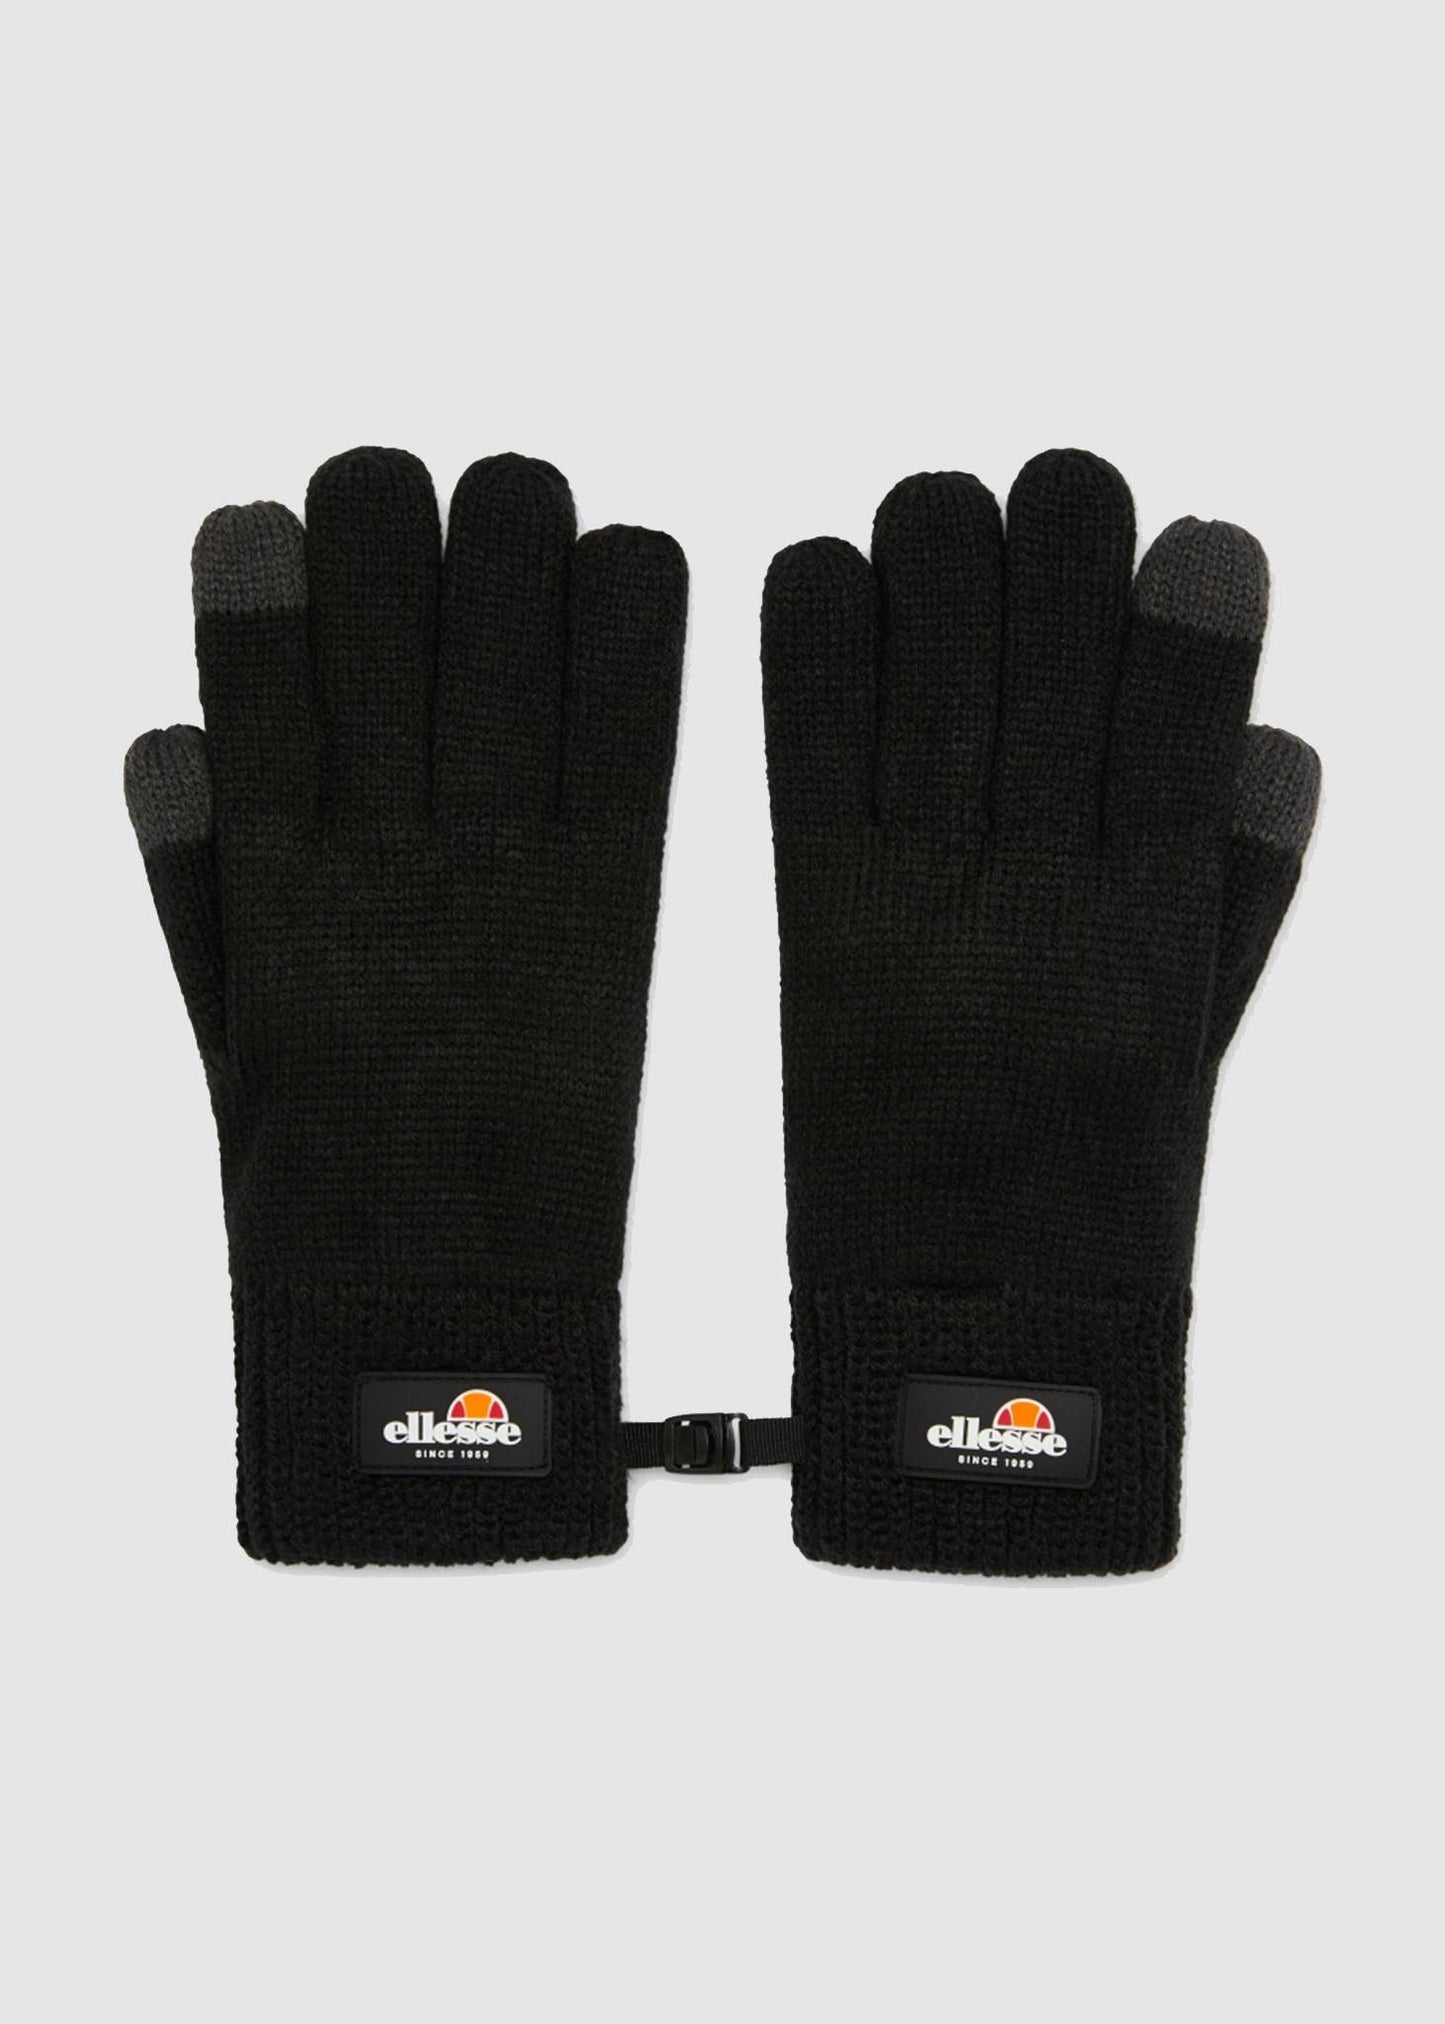 Fabian gloves